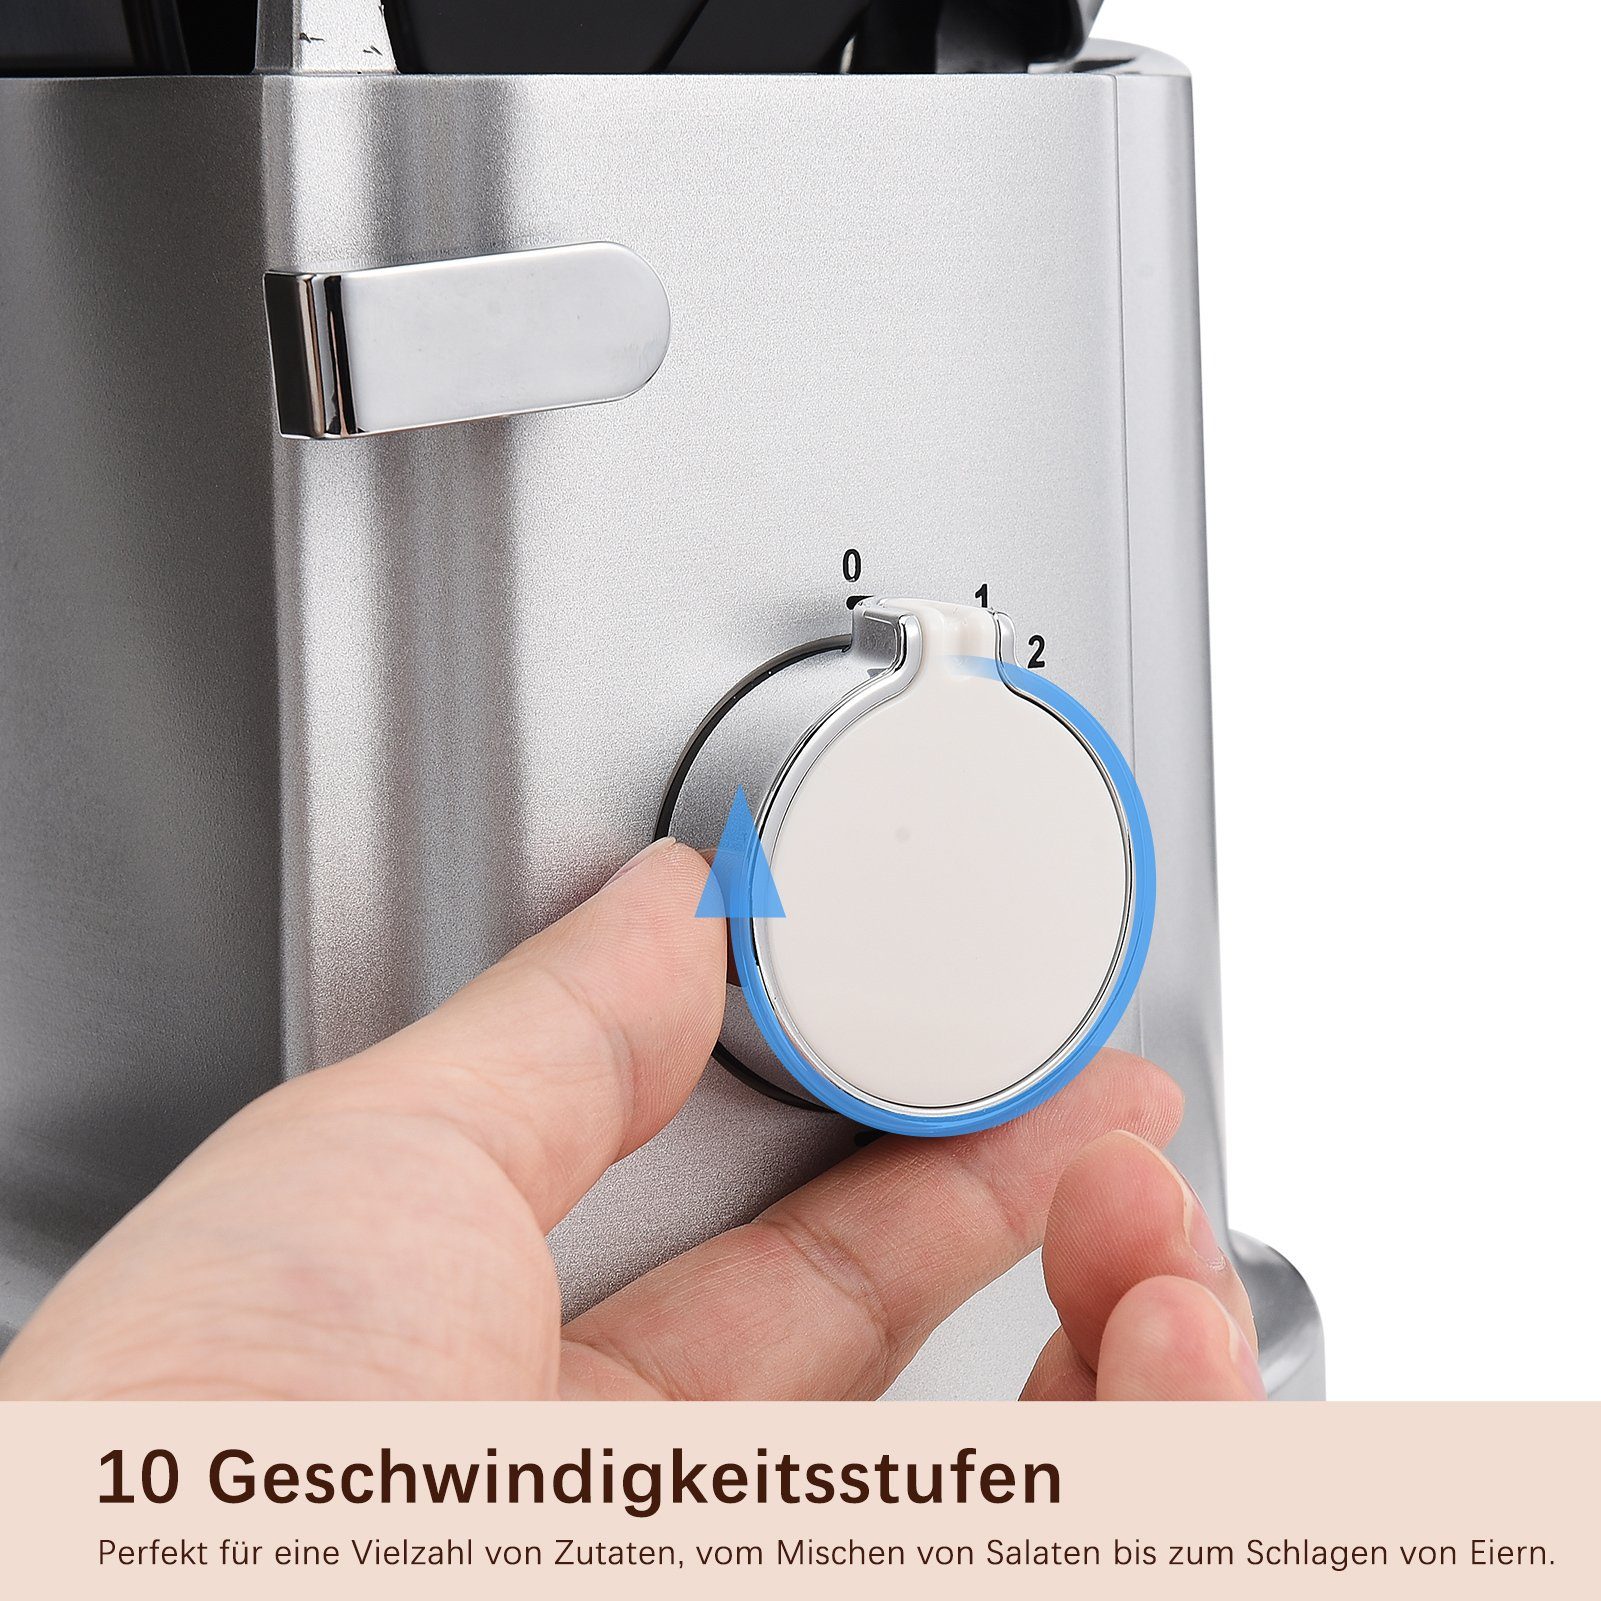 FUROKOY Küchenmaschine mit Silber Kleine Mixer Multifunktional Haushaltsgeräte Küchenmaschine Kochfunktion Maschine